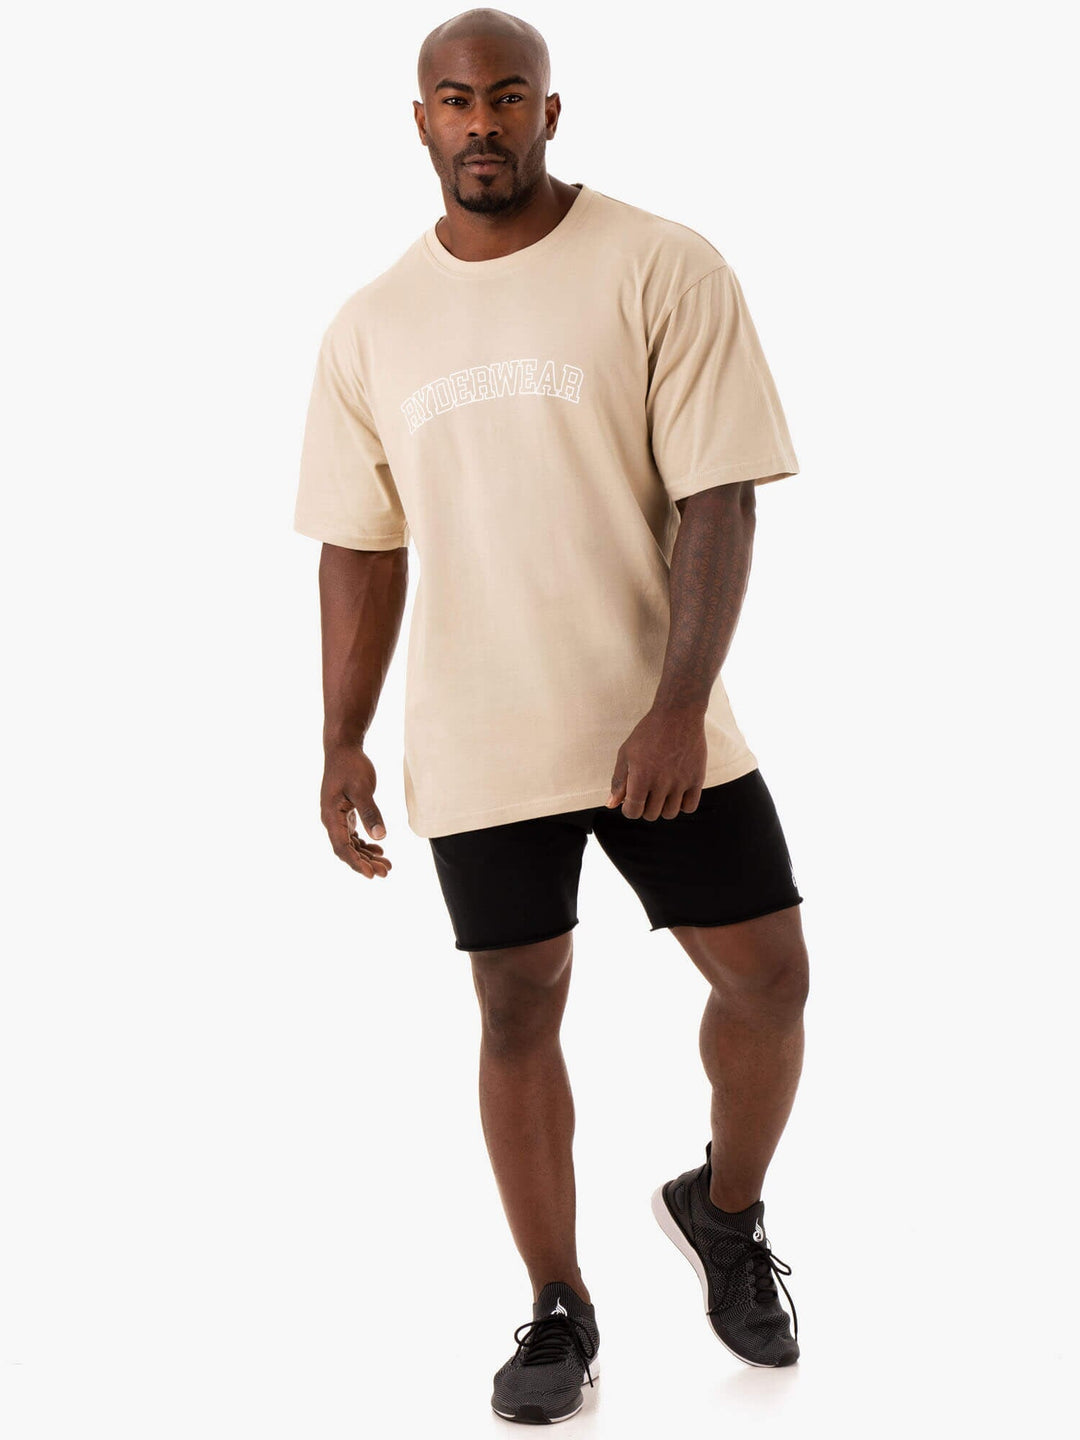 Oversized T-Shirt - Sandstone Clothing Ryderwear 